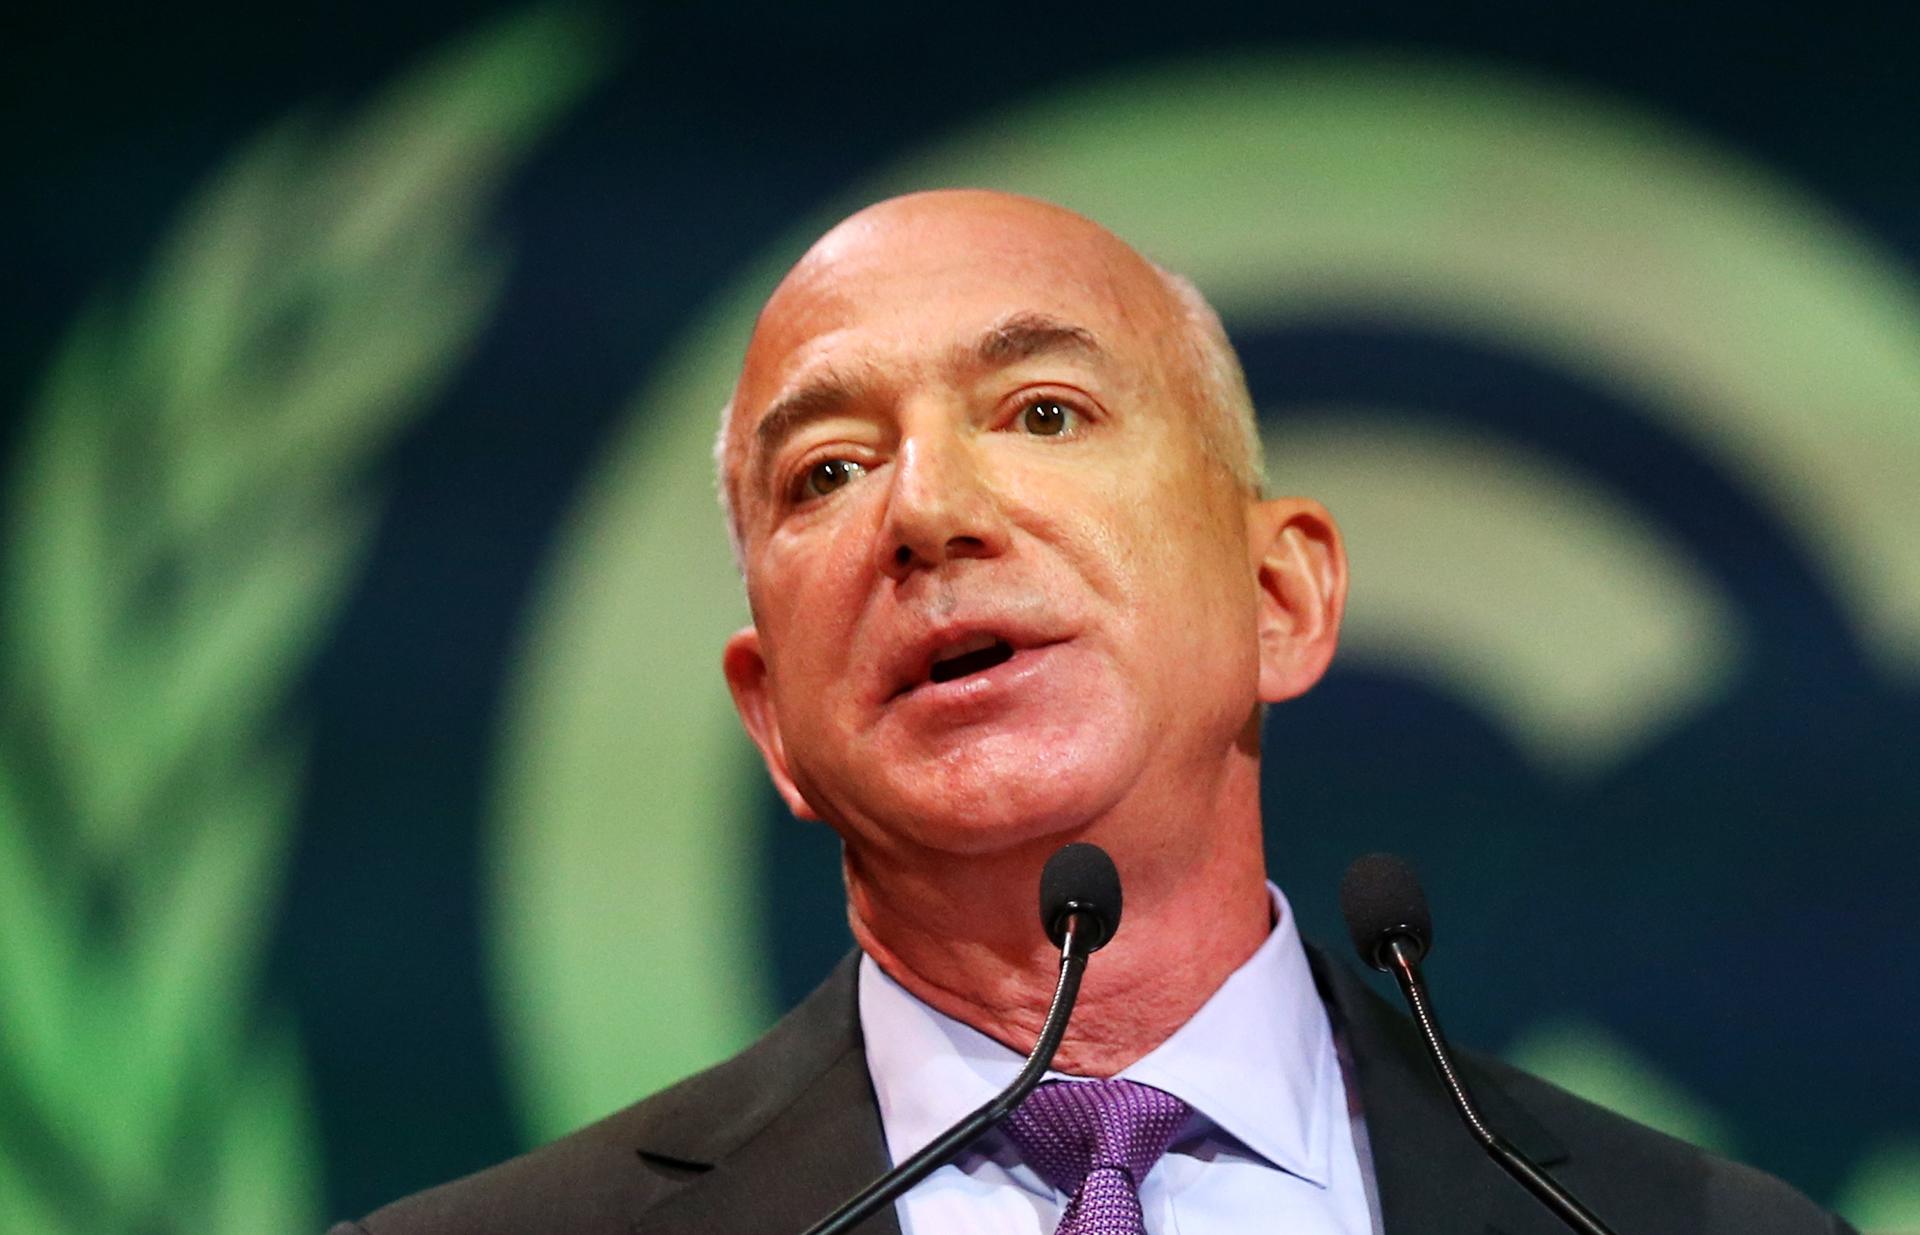 El fundador de Amazon Jeff Bezos. Foto: EFE/EPA/ROBERT PERRY